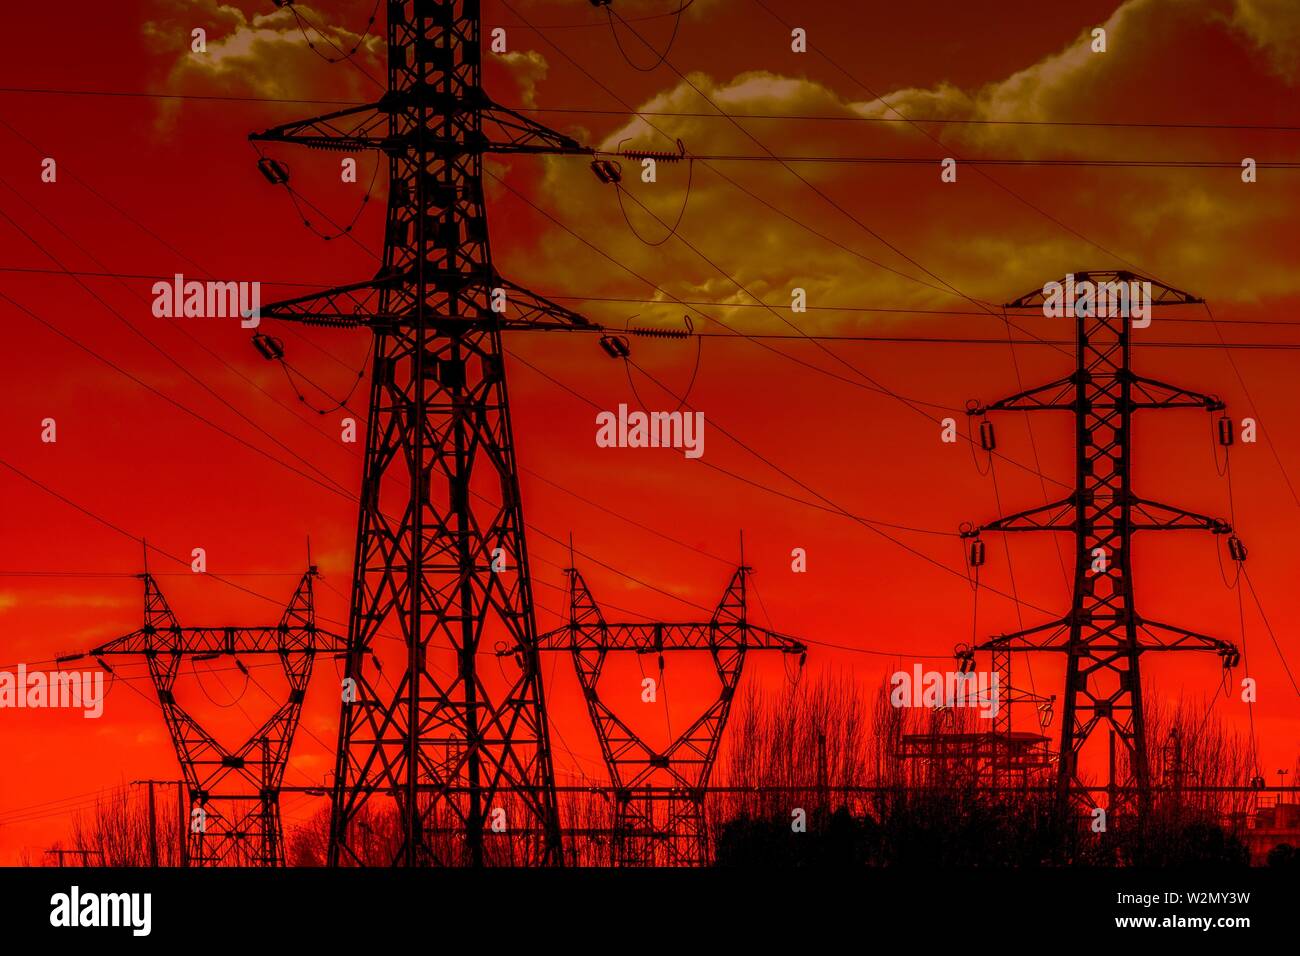 Los postes de la electricidad al atardecer, cielo naranja Foto de stock